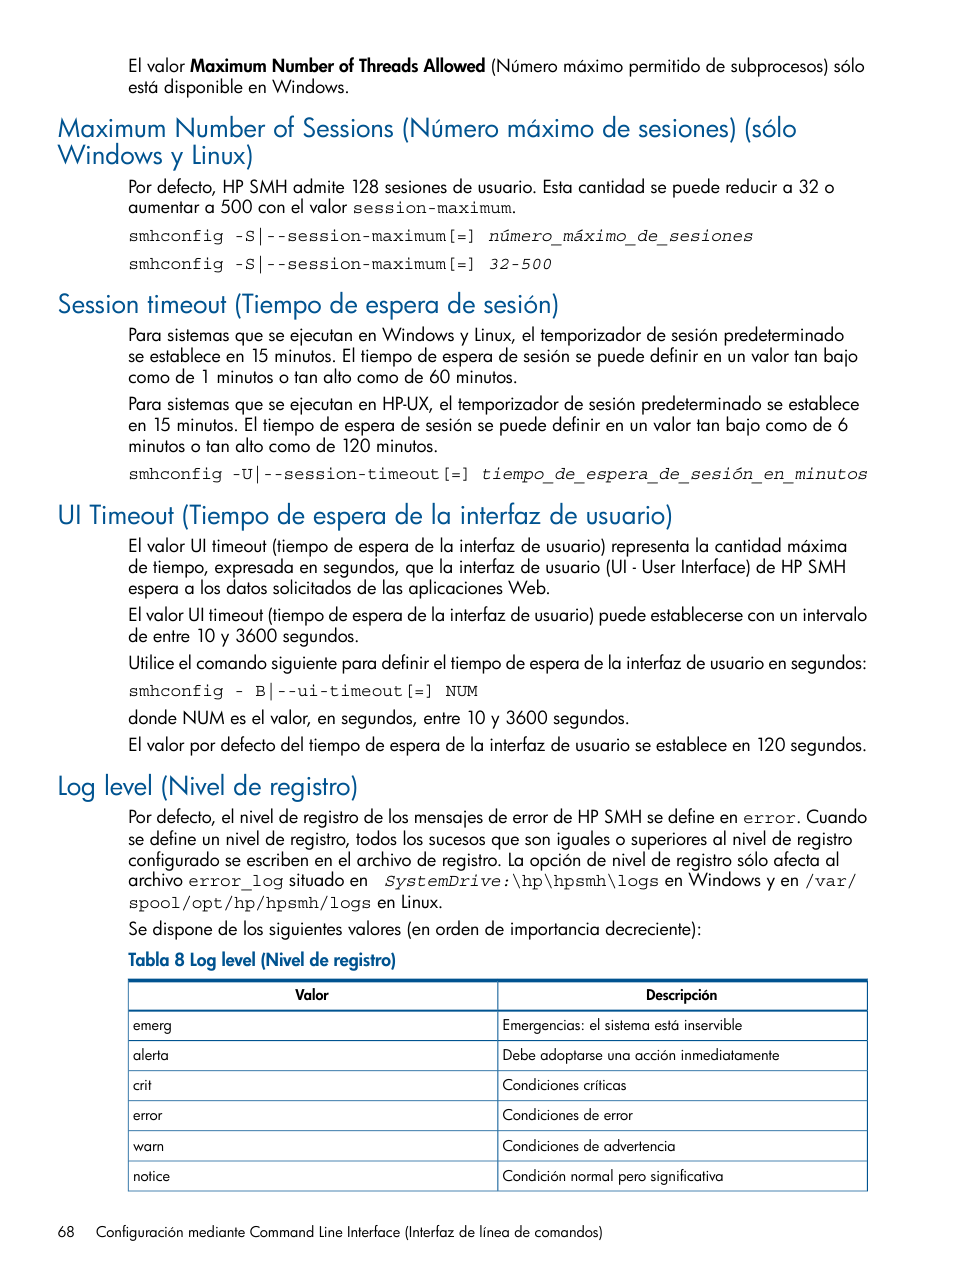 Session timeout (tiempo de espera de sesión), Log level (nivel de registro) | HP Software HP System Management Homepage Manual del usuario | Página 68 / 105